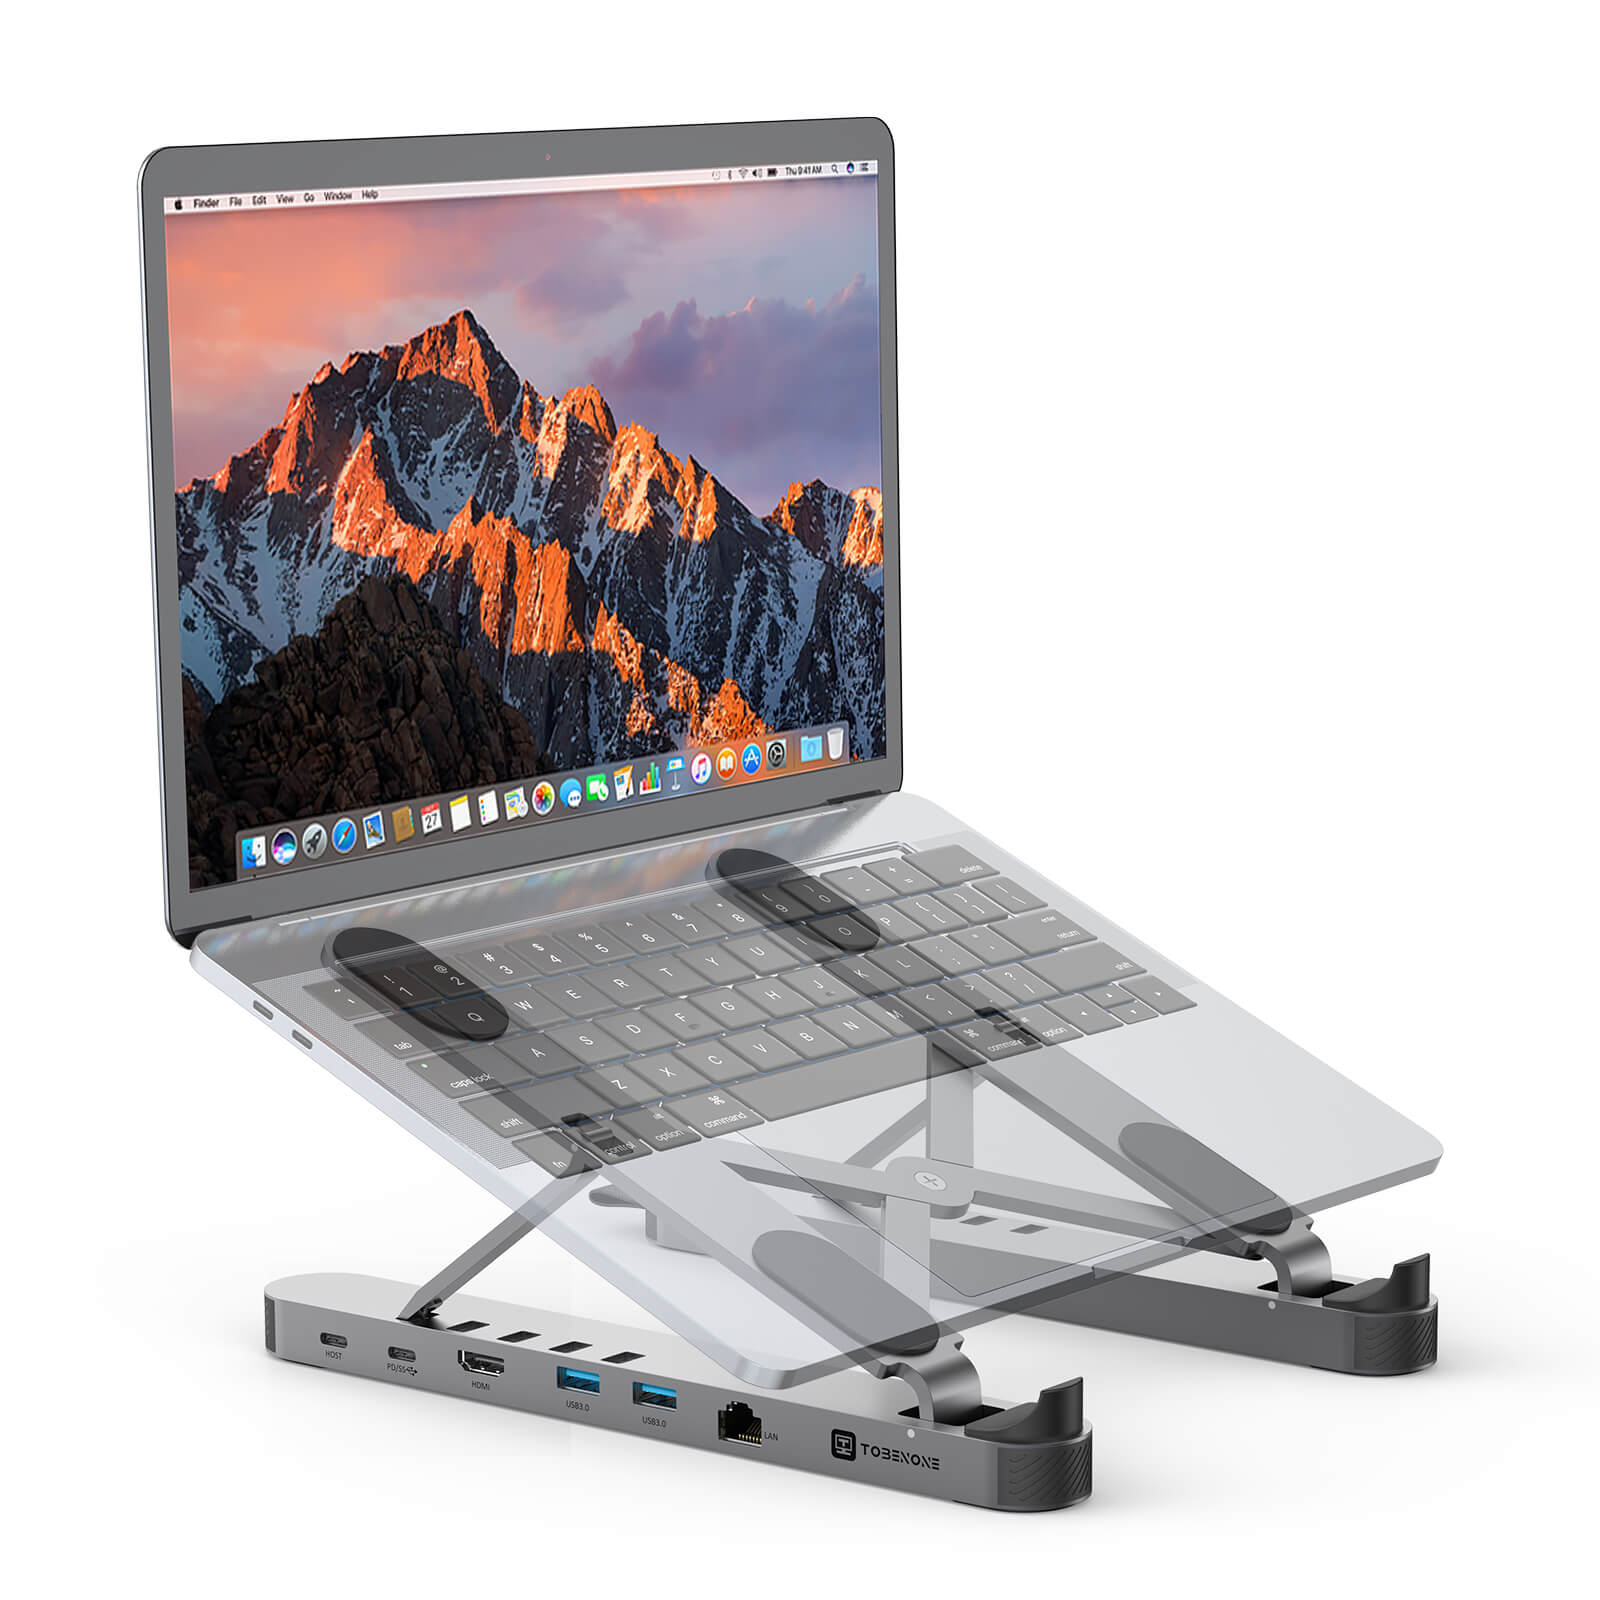 bestikke Puno Lad os gøre det UDS029 USB C Laptop Docking Station Ergonomic Portable Laptop Stand –  Tobenone